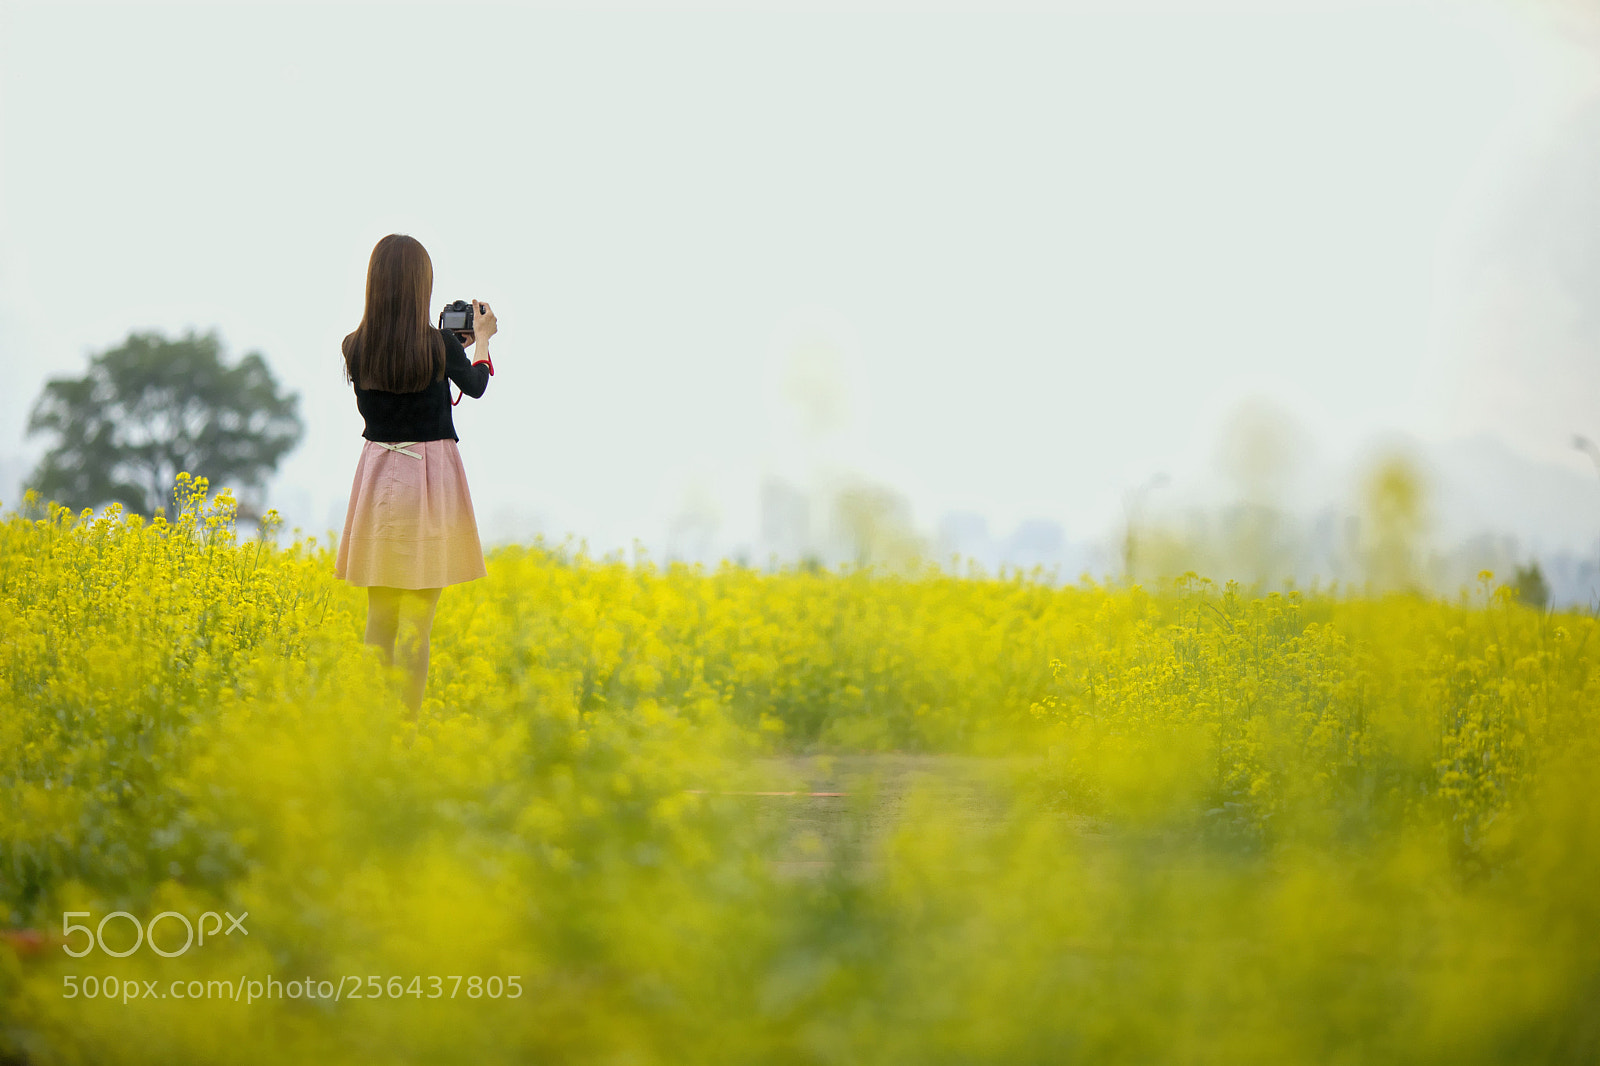 Canon EOS 5D Mark IV sample photo. A spring girl photography